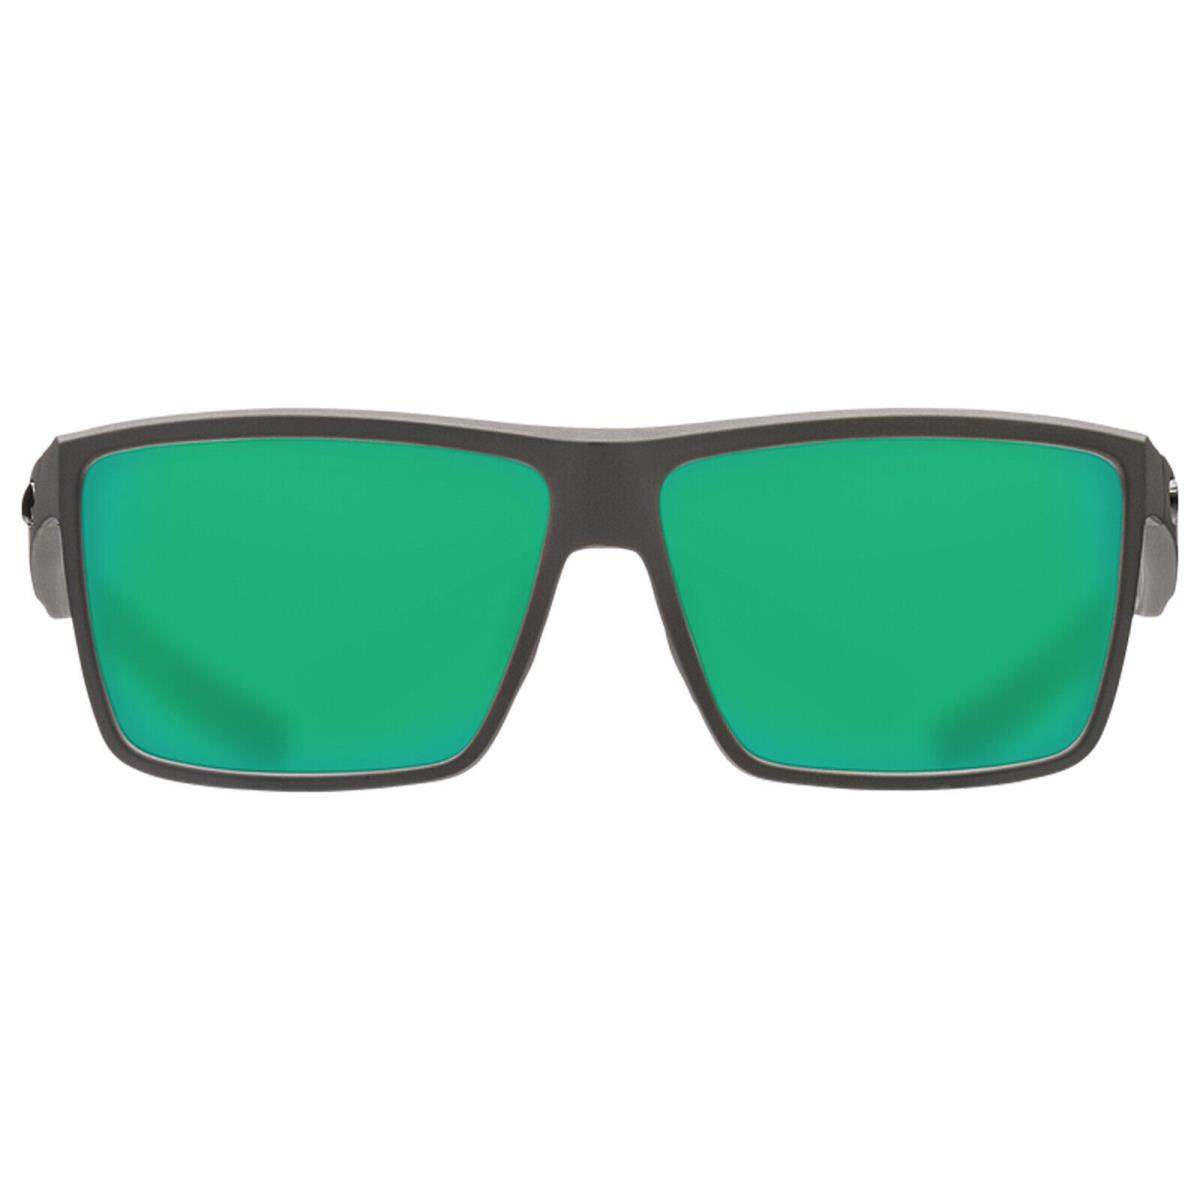 Costa Del Mar Rinconcito Matte Gray- Green Mirror 580G Polarized 60mm Sunglasses - Frame: Gray, Lens: Green